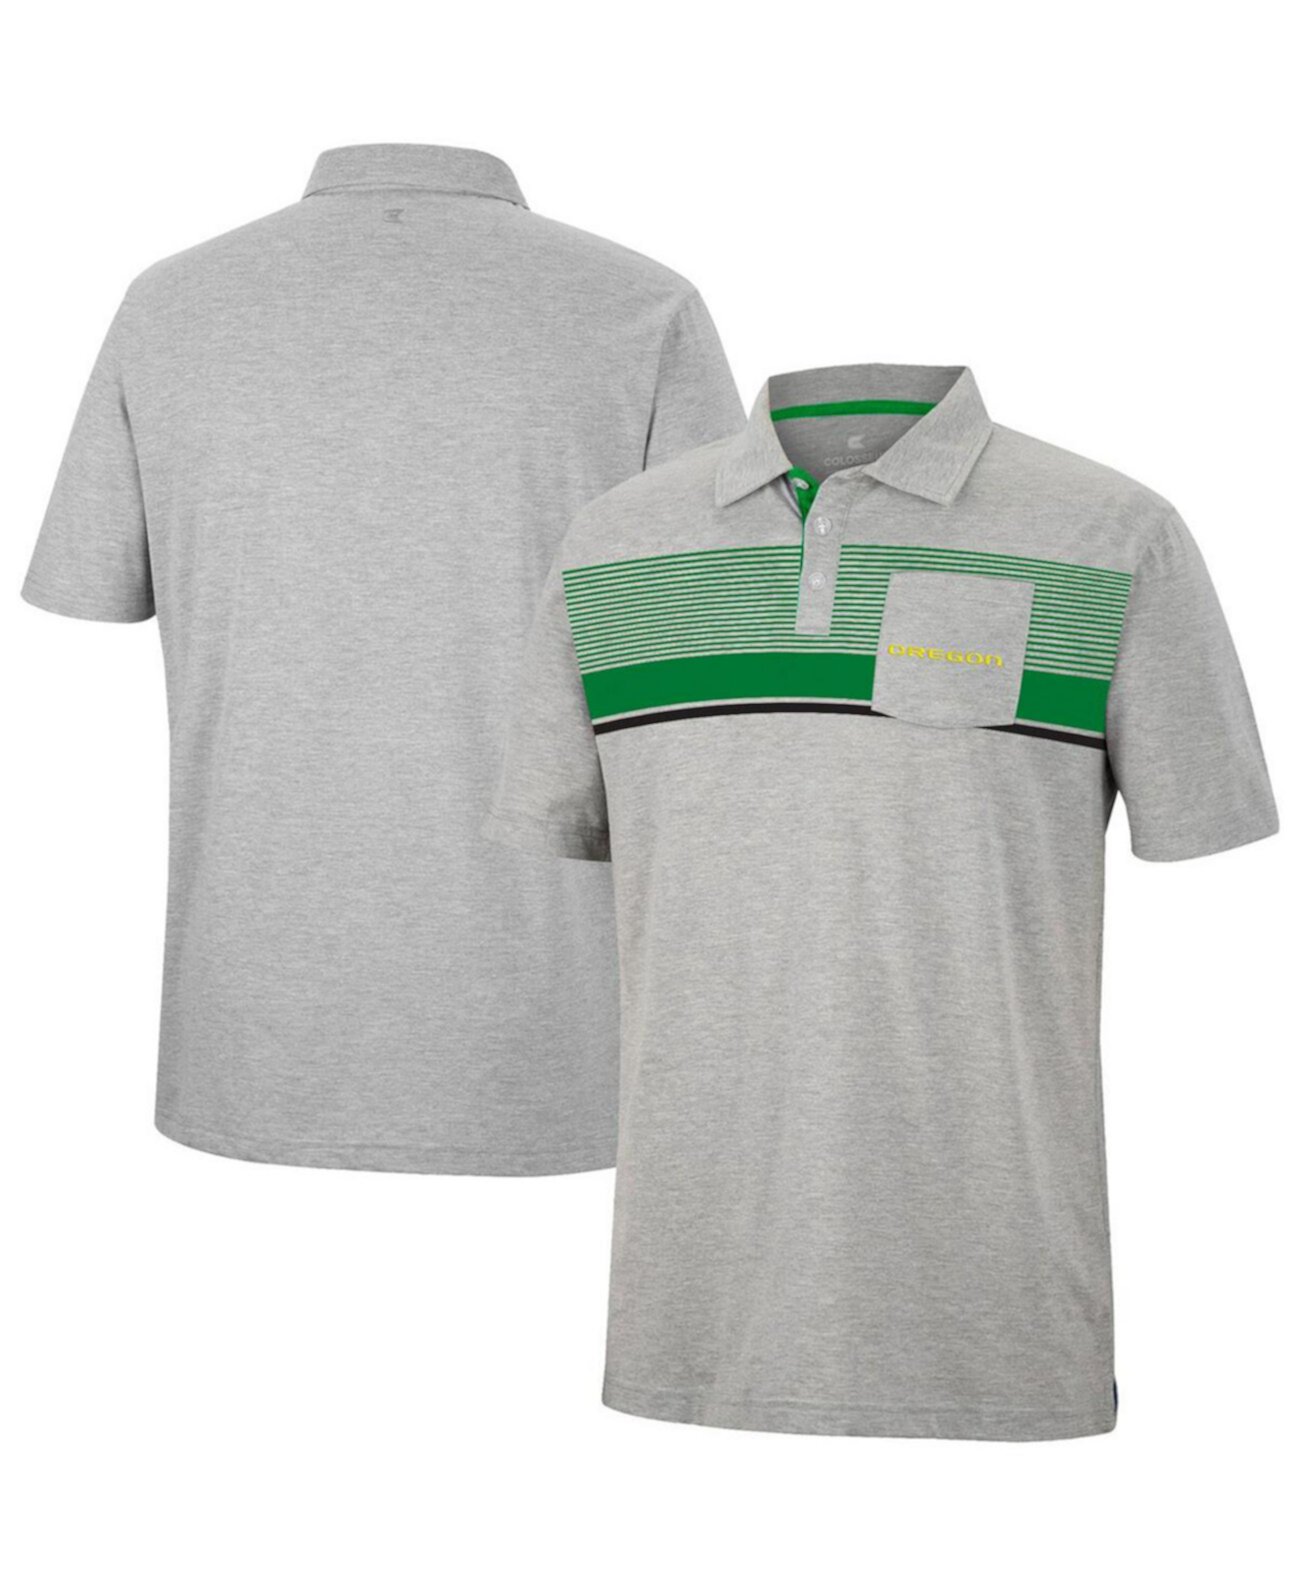 Мужская серая рубашка-поло с карманами для гольфиста Oregon Ducks Colosseum